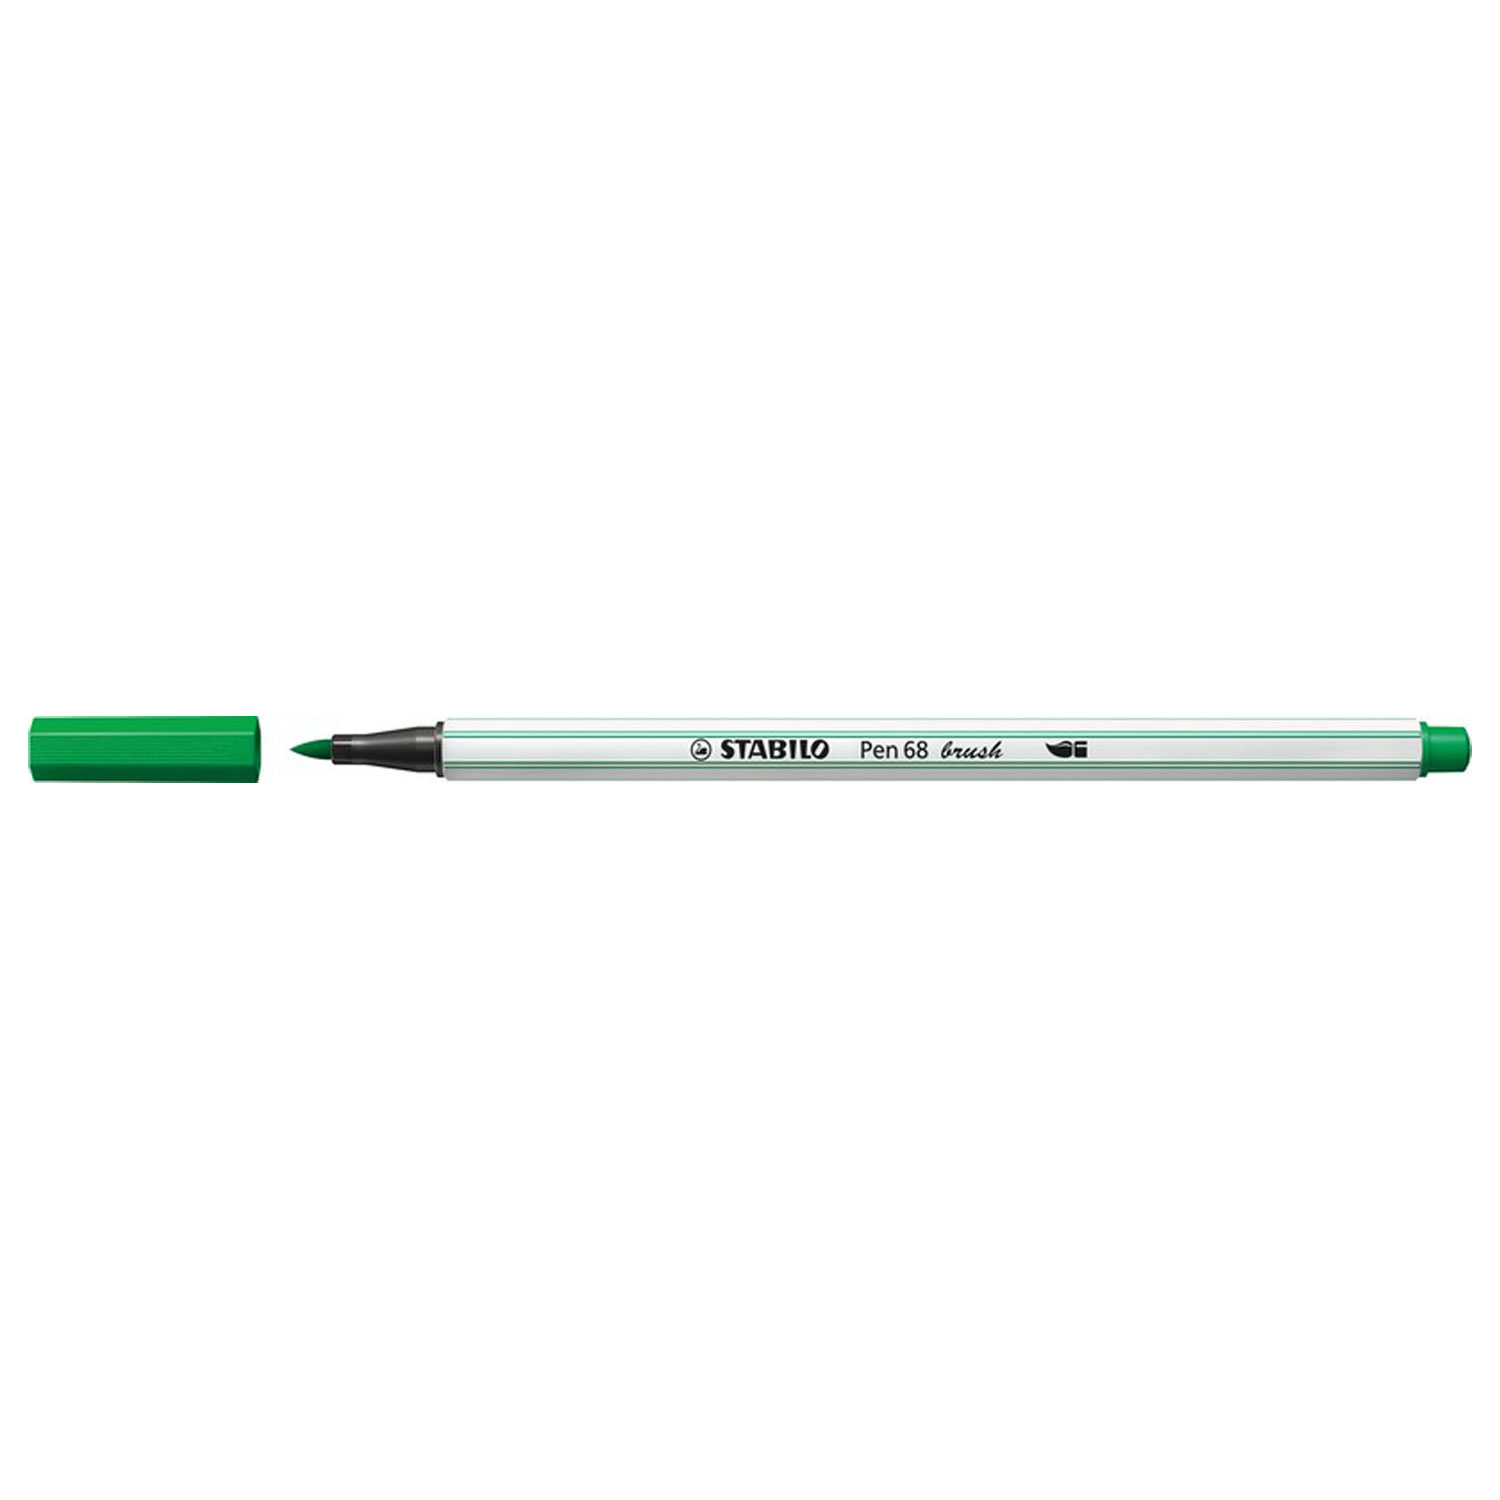 STABILO Pen 68 Brush - Feutre - Vert (36)